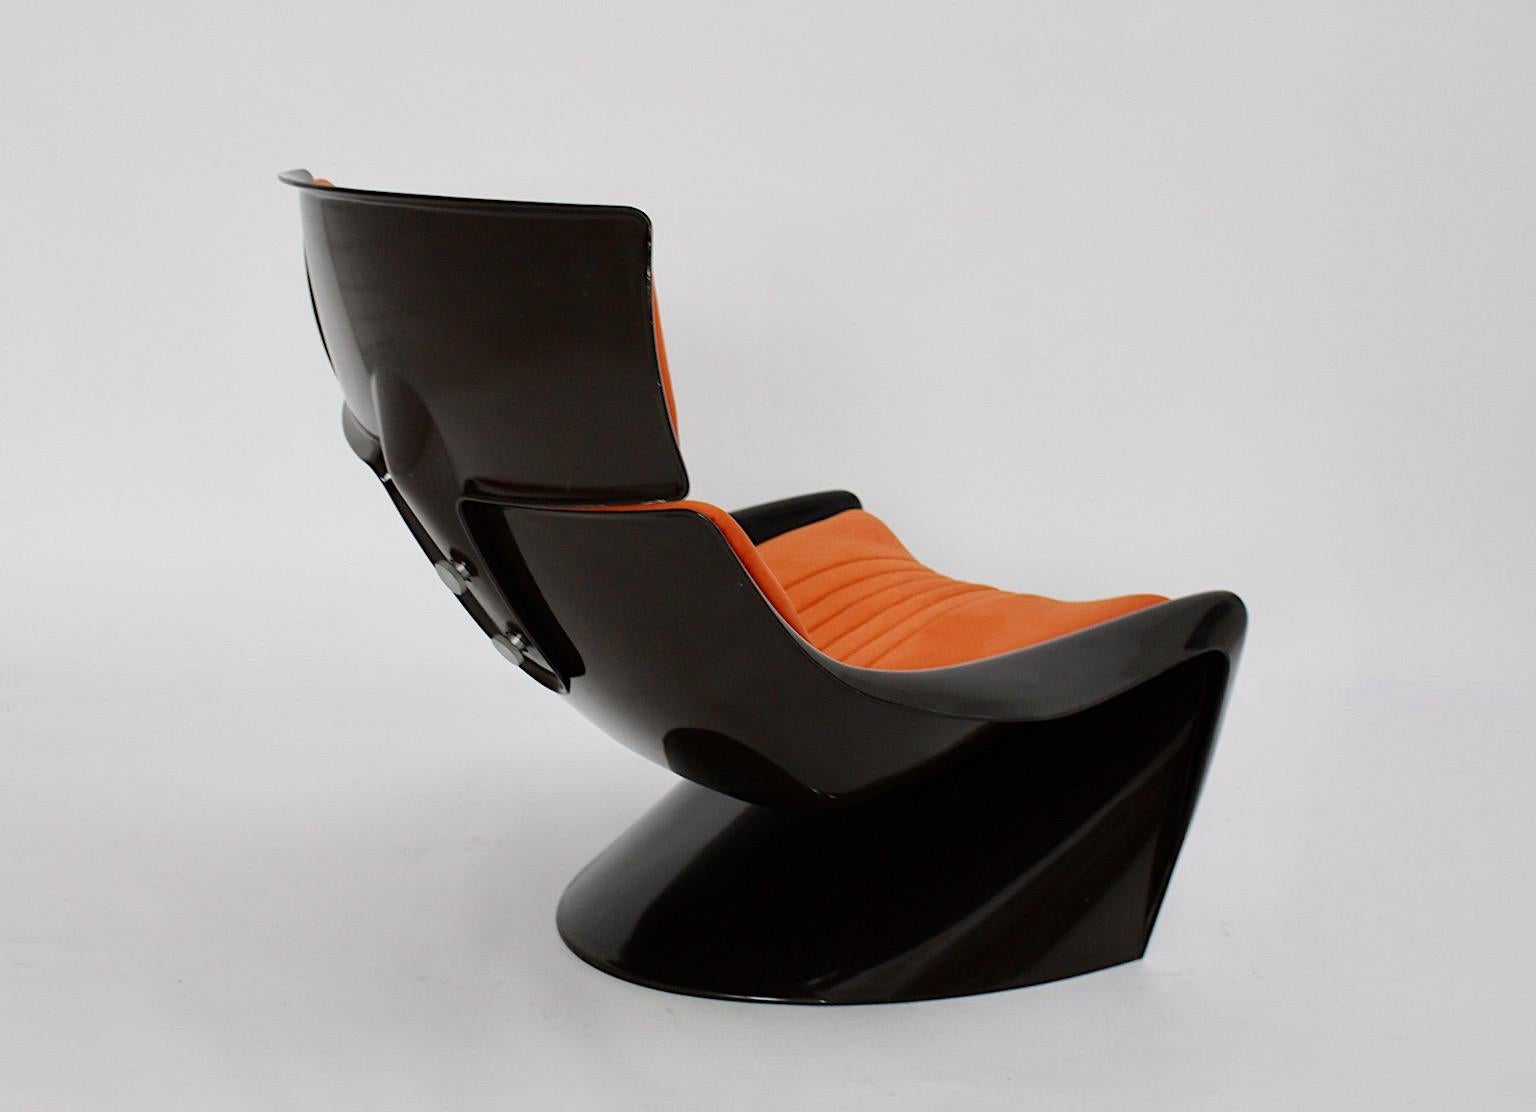 Fauteuil de salon vintage Space Age ou fauteuil club Meteor ou President Chair en plastique et revêtement textile dans les couleurs brun et orange.
Une chaise longue autoportante authentique et audacieuse, parfaite pour se détendre et lire un livre,